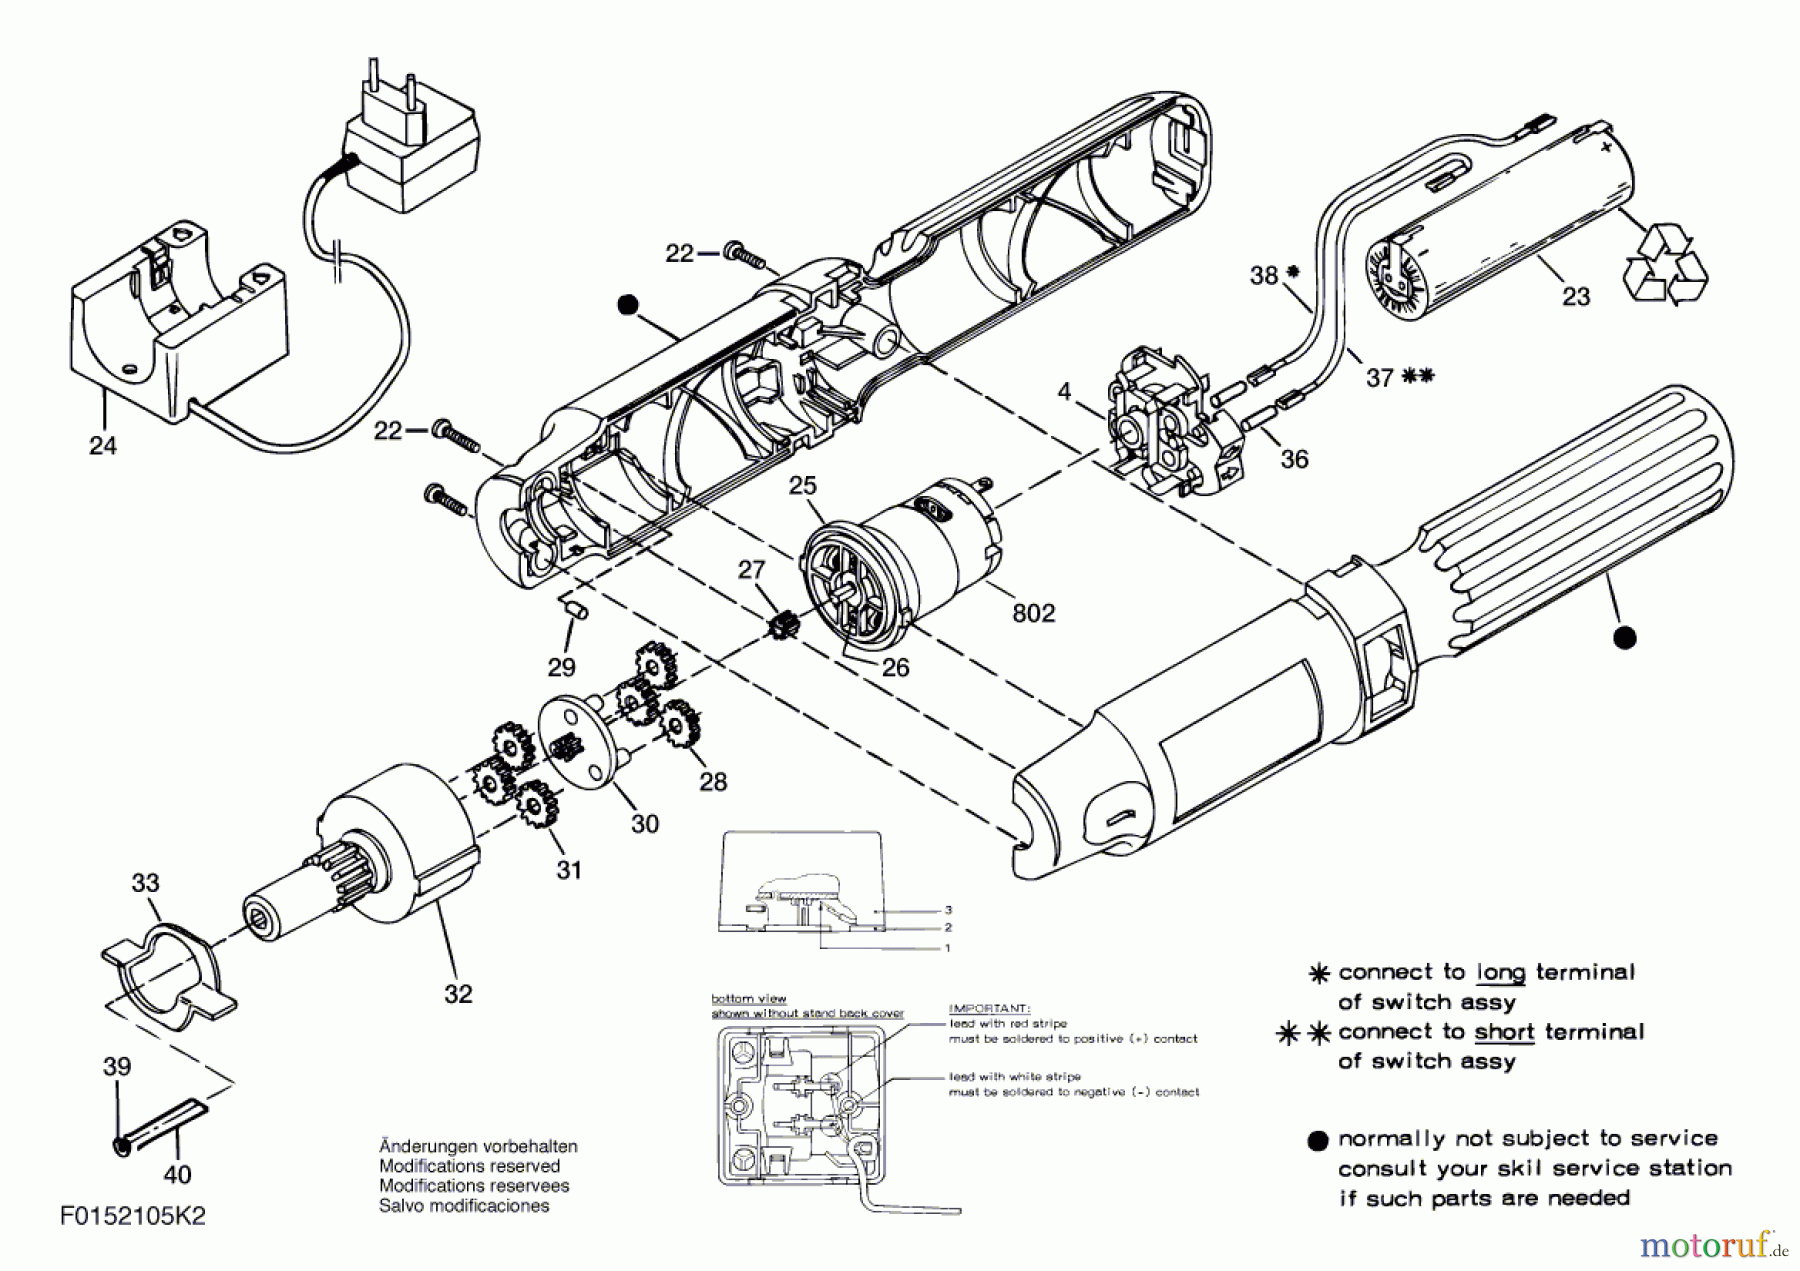  Bosch Werkzeug Bohrschrauber 2105 Seite 1